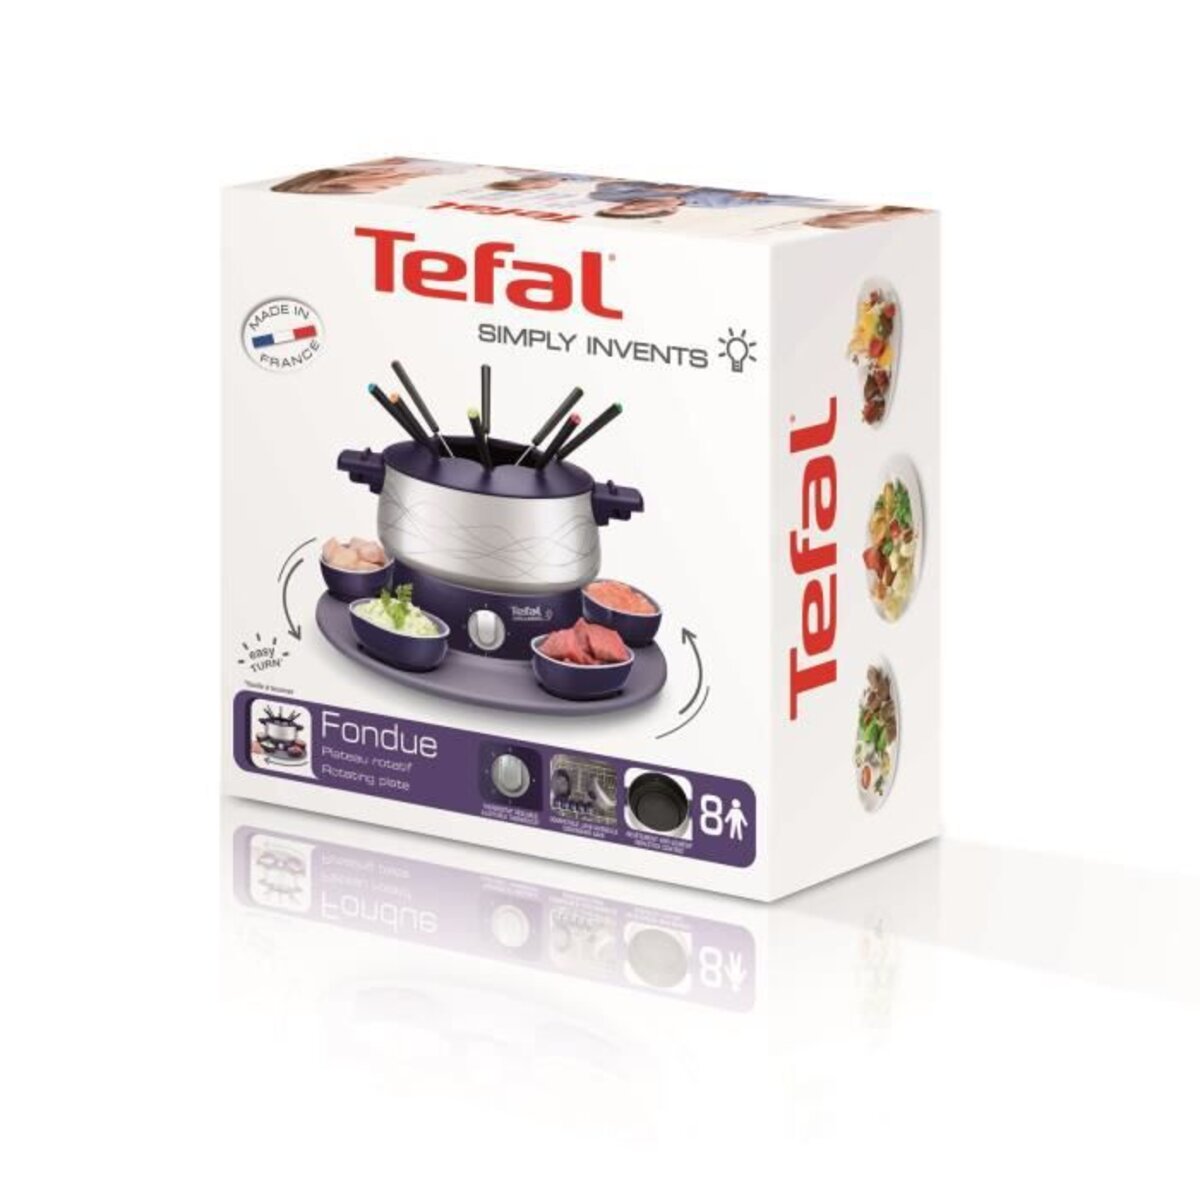 Tefal ef351412 simply invents fondue électrique 8 p thermostat